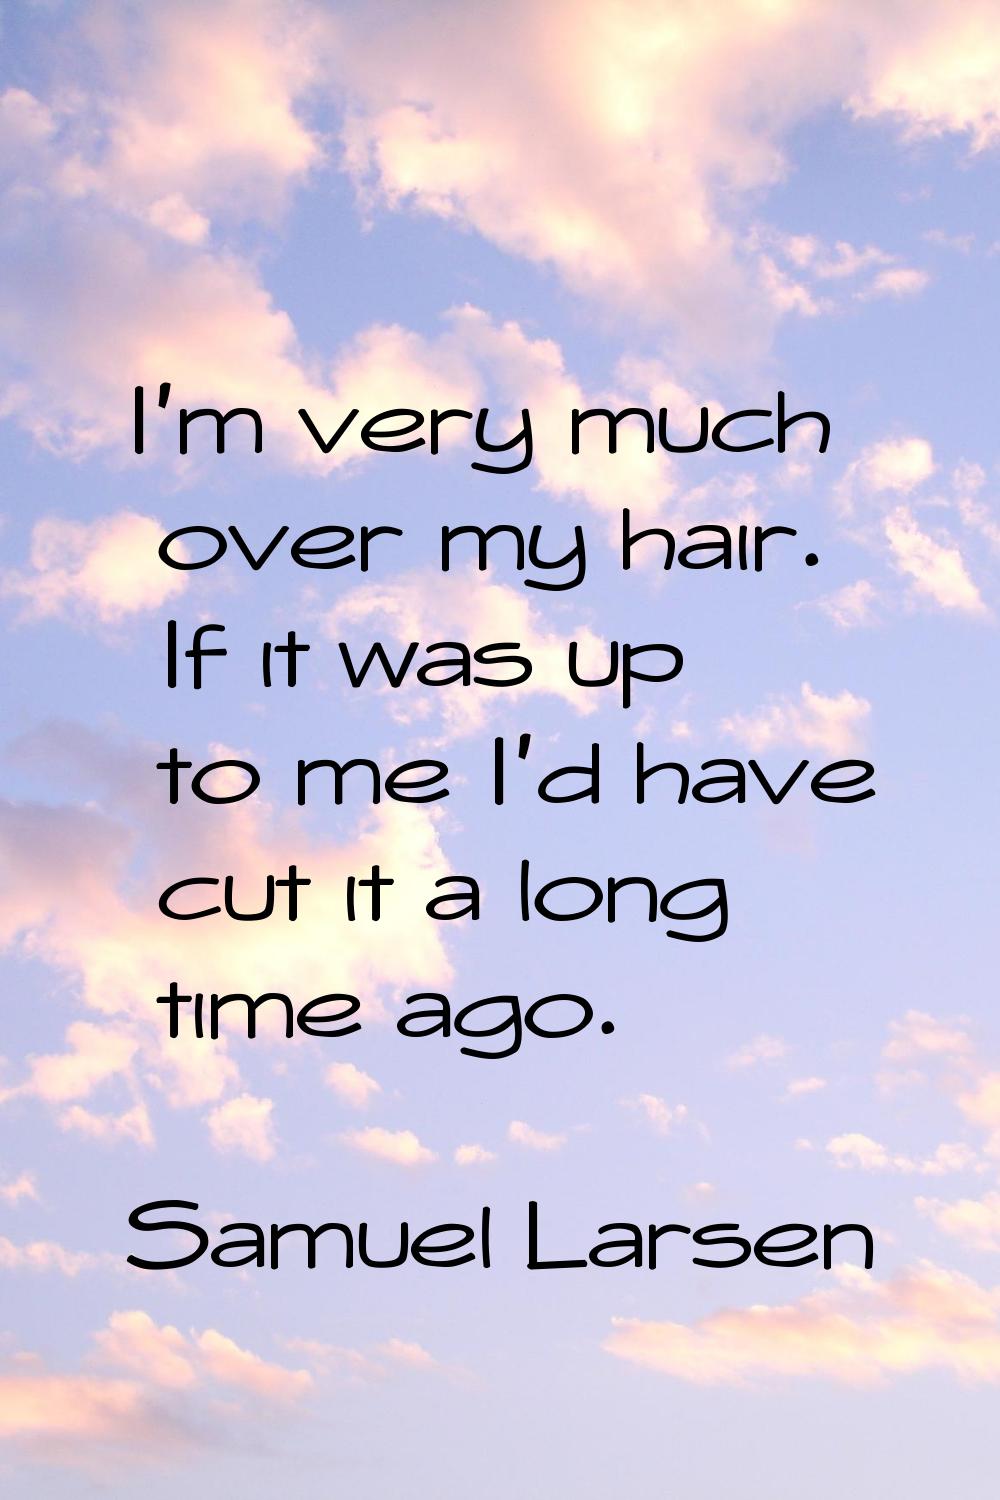 I'm very much over my hair. If it was up to me I'd have cut it a long time ago.